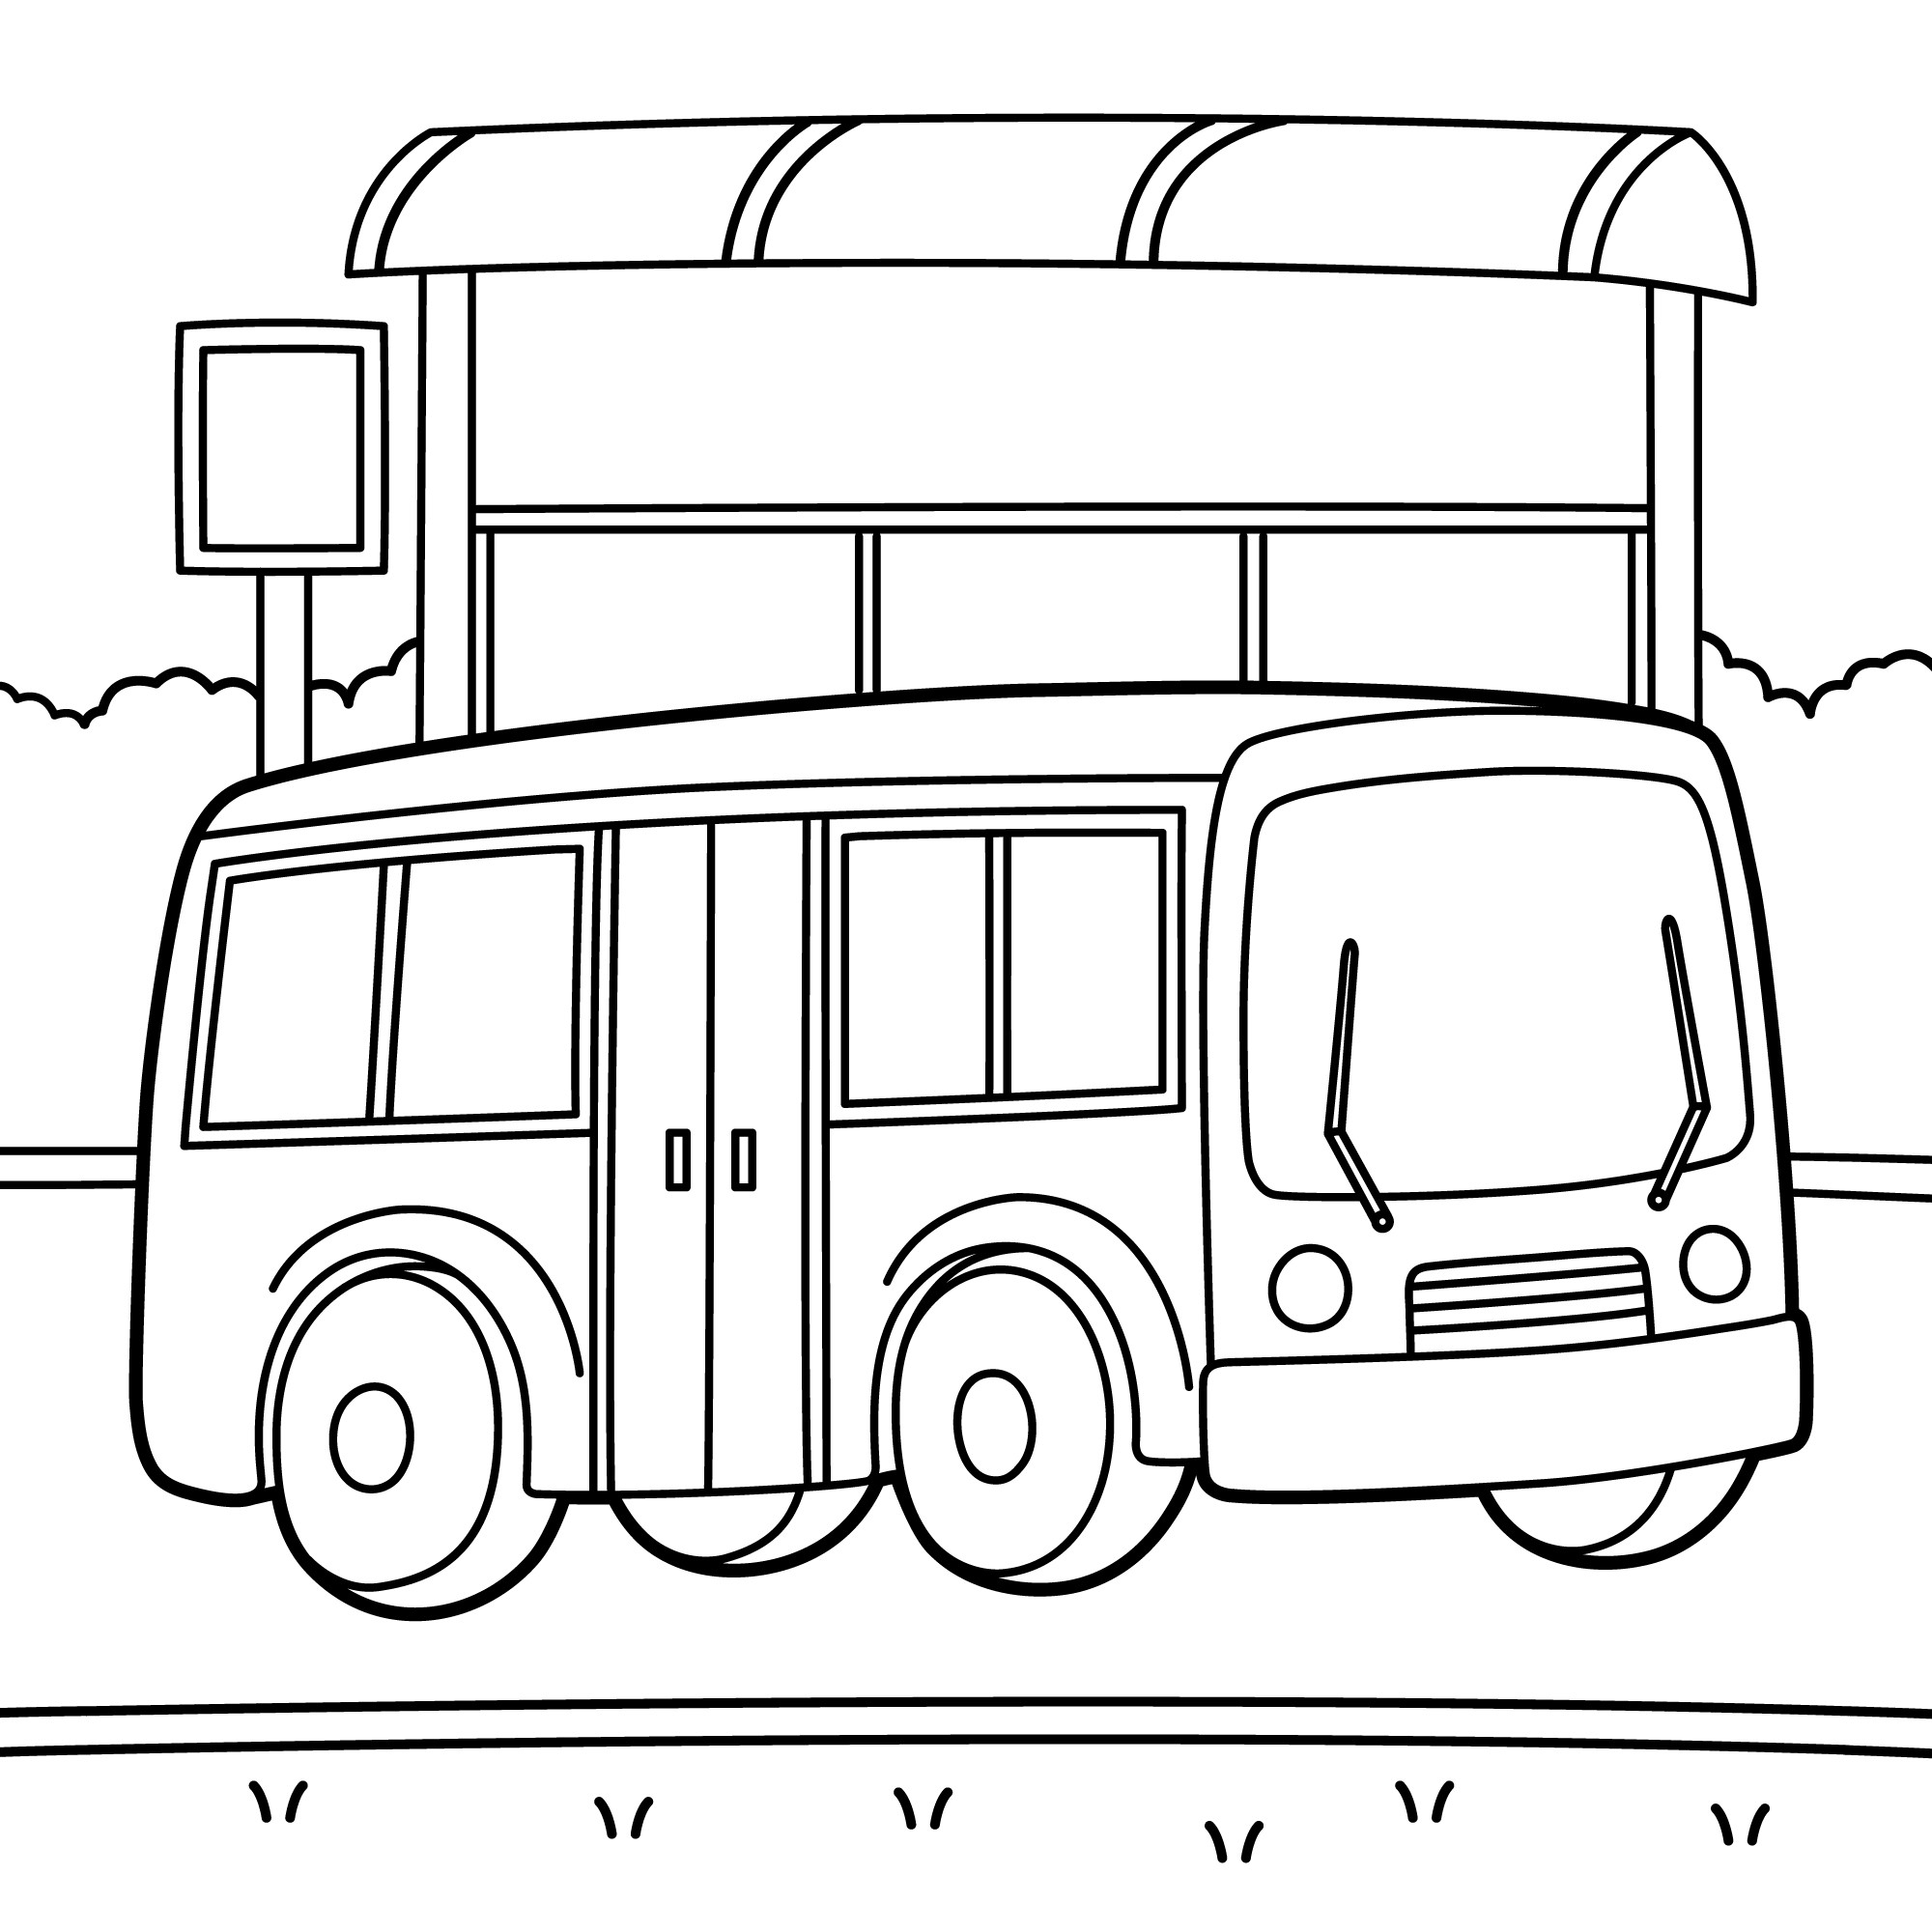 Раскраска для детей: автобус пазик стоит на остановке